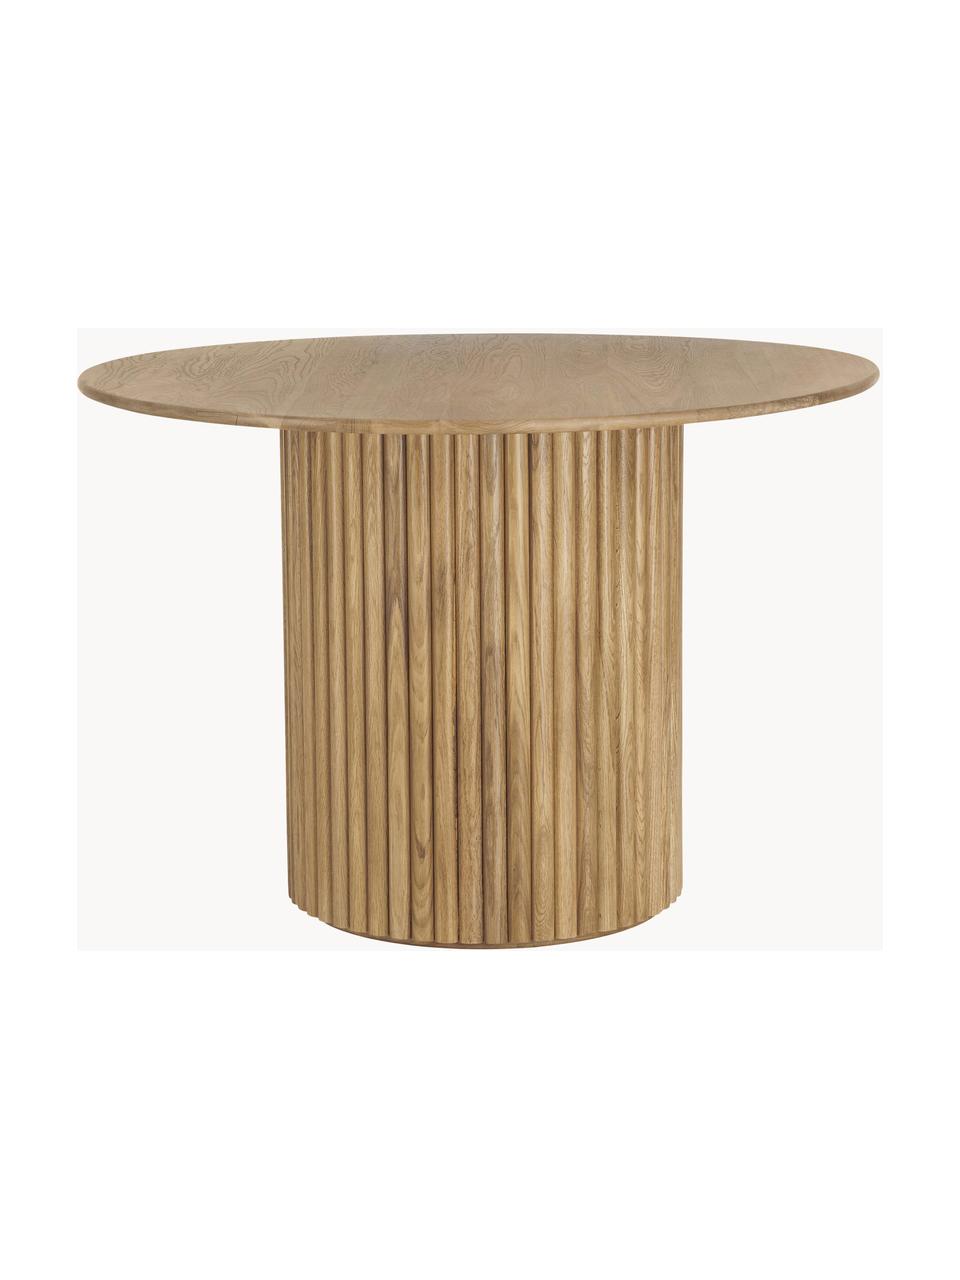 Okrúhly drevený jedálenský stôl Janina, Ø 110 cm, Masívne dubové drevo, MDF-doska strednej hustoty, lakovaná, Dubové drevo, lakované, Ø 110 x V 75 cm